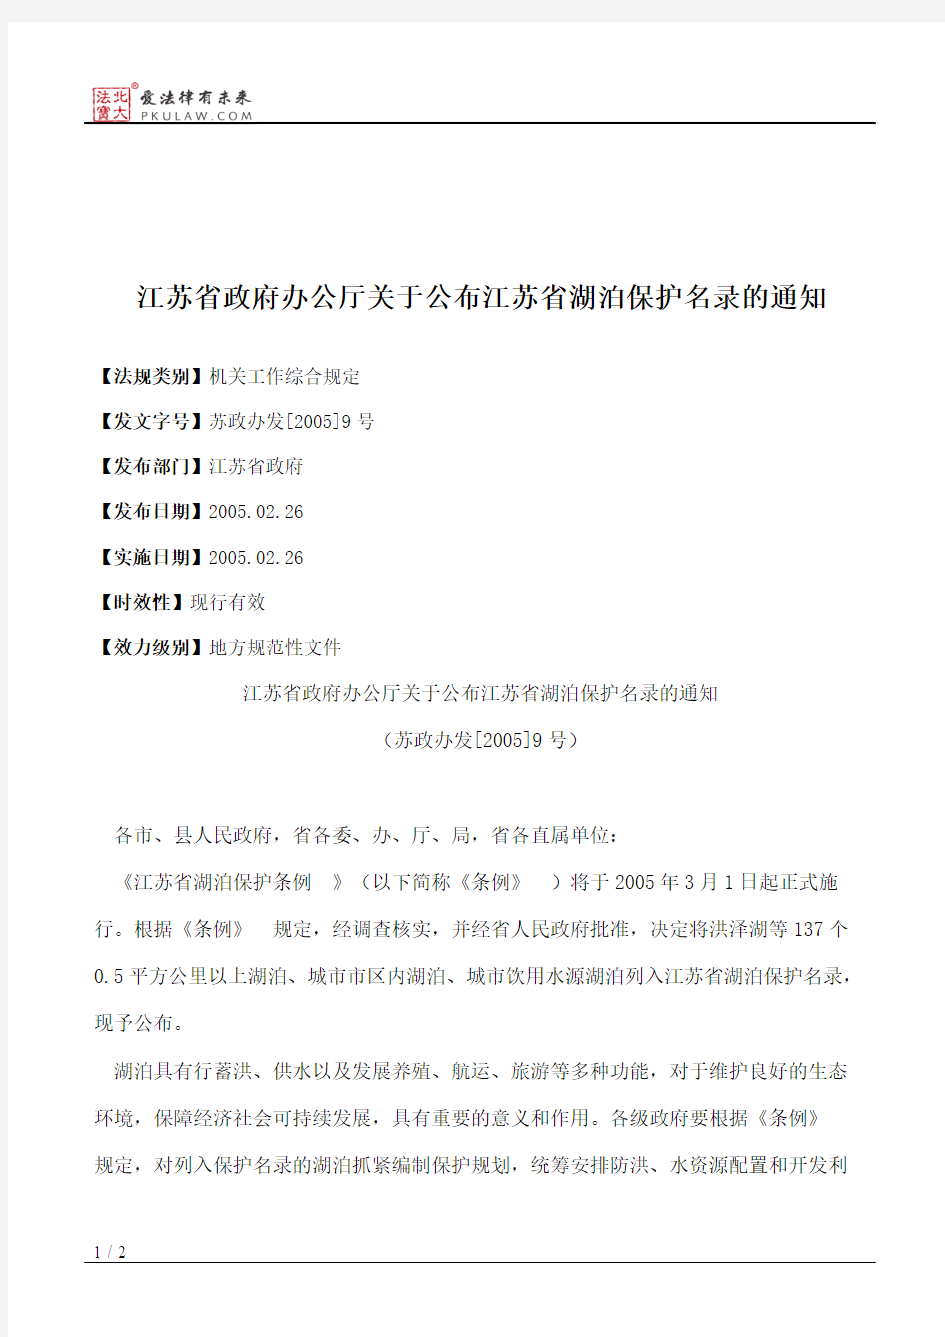 江苏省政府办公厅关于公布江苏省湖泊保护名录的通知